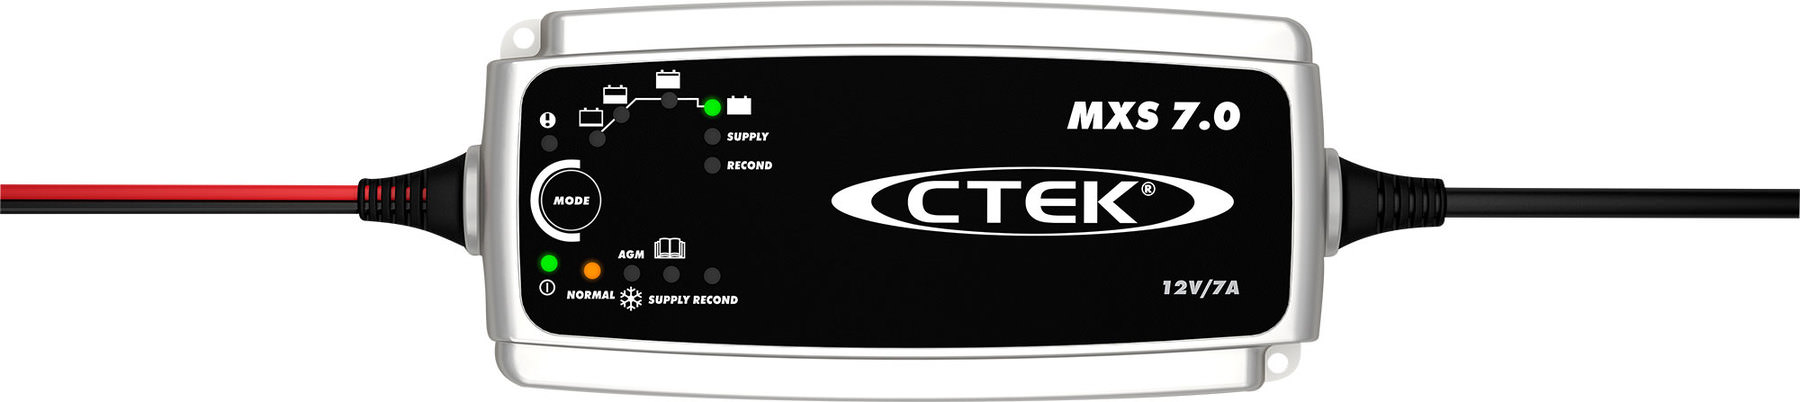 CTEK MXS 7.0 Battery Charger 12v Car Auto Car Boat Transporters AGM GEL Acid 